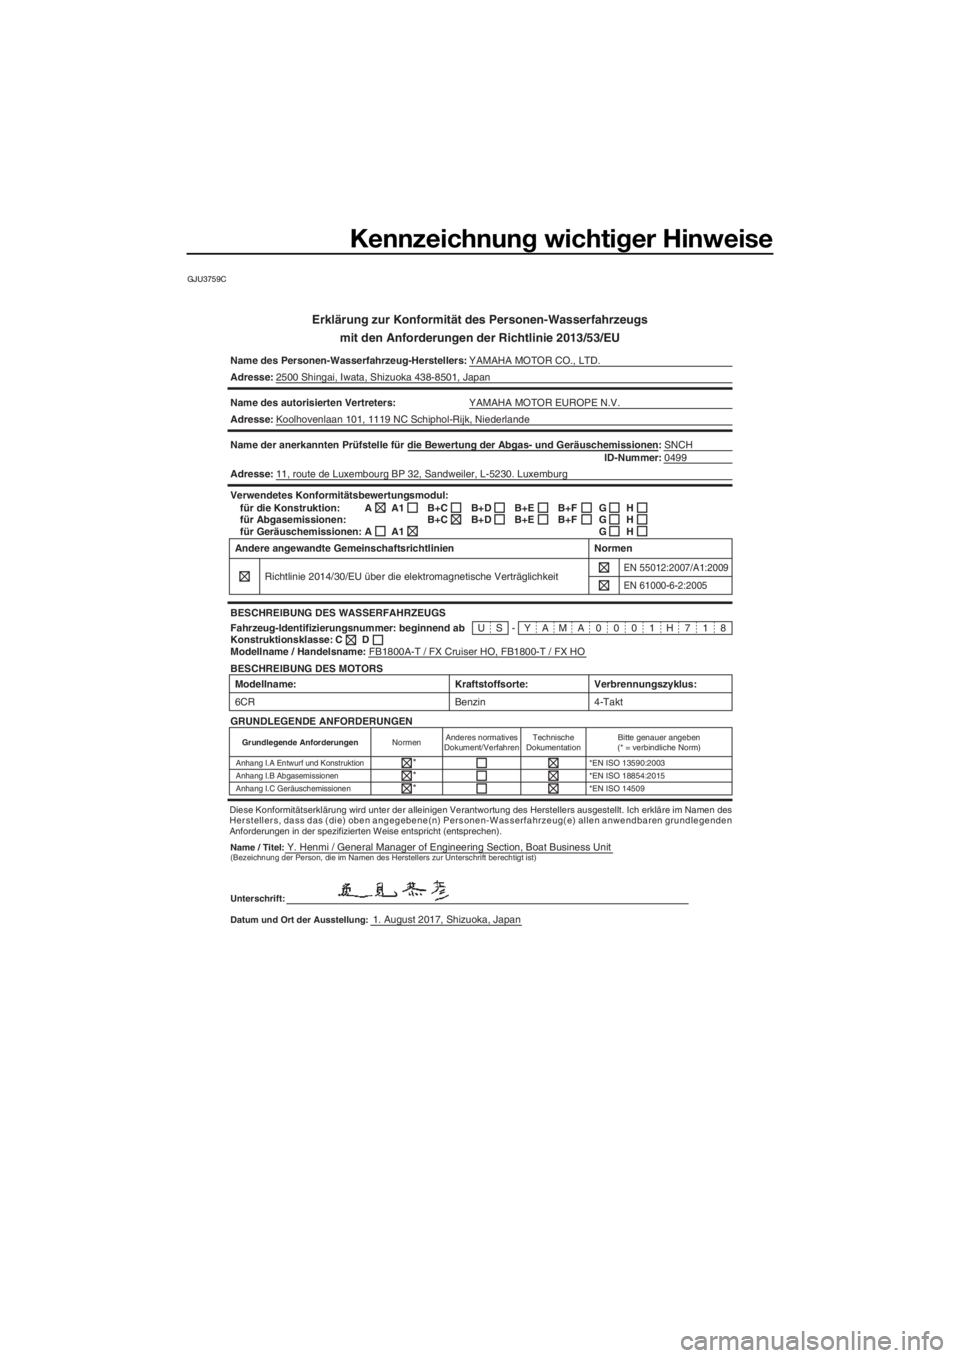 YAMAHA FX HO CRUISER 2018  Betriebsanleitungen (in German) Kennzeichnung wichtiger Hinweise
GJU3759C
Erklärung zur Konformität des Personen-Wasserfahrzeugs
mit den Anforderungen der Richtlinie 2013/53/EU
Name des Personen-Wasserfahrzeug-Herstellers:YAMAHA M